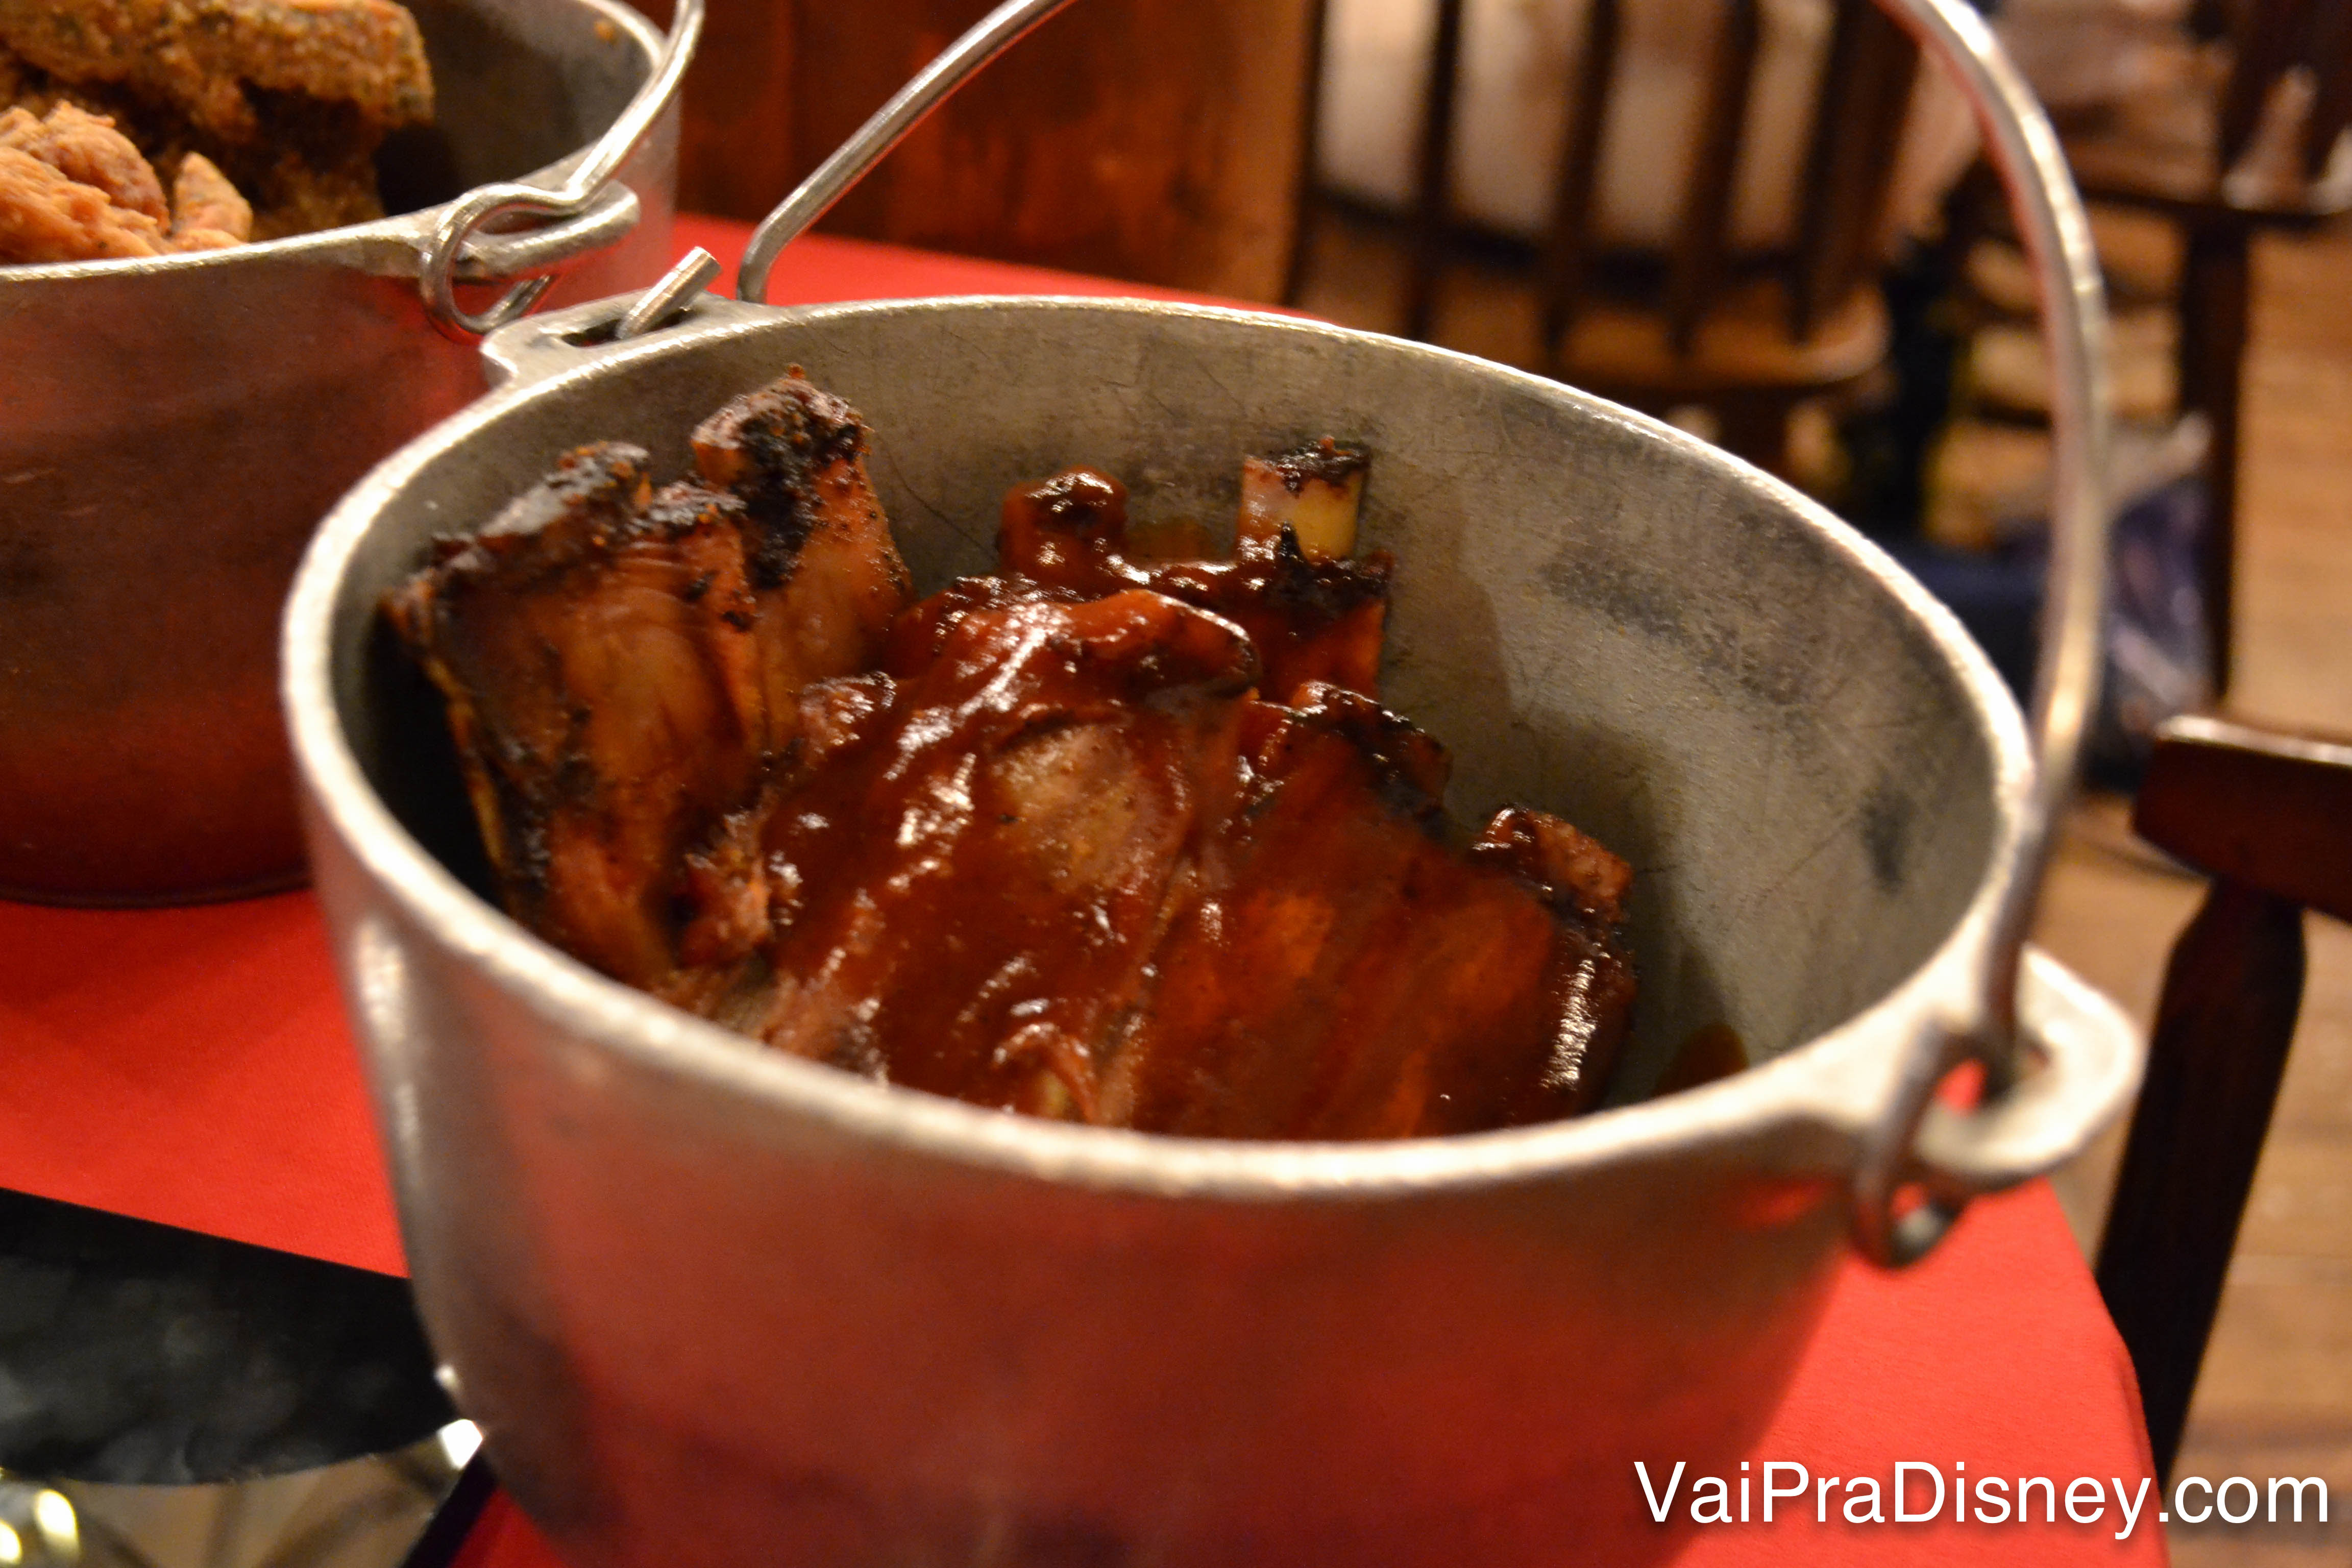 Costelinha de porco com molho barbecue também servida no baldinho de ferro 